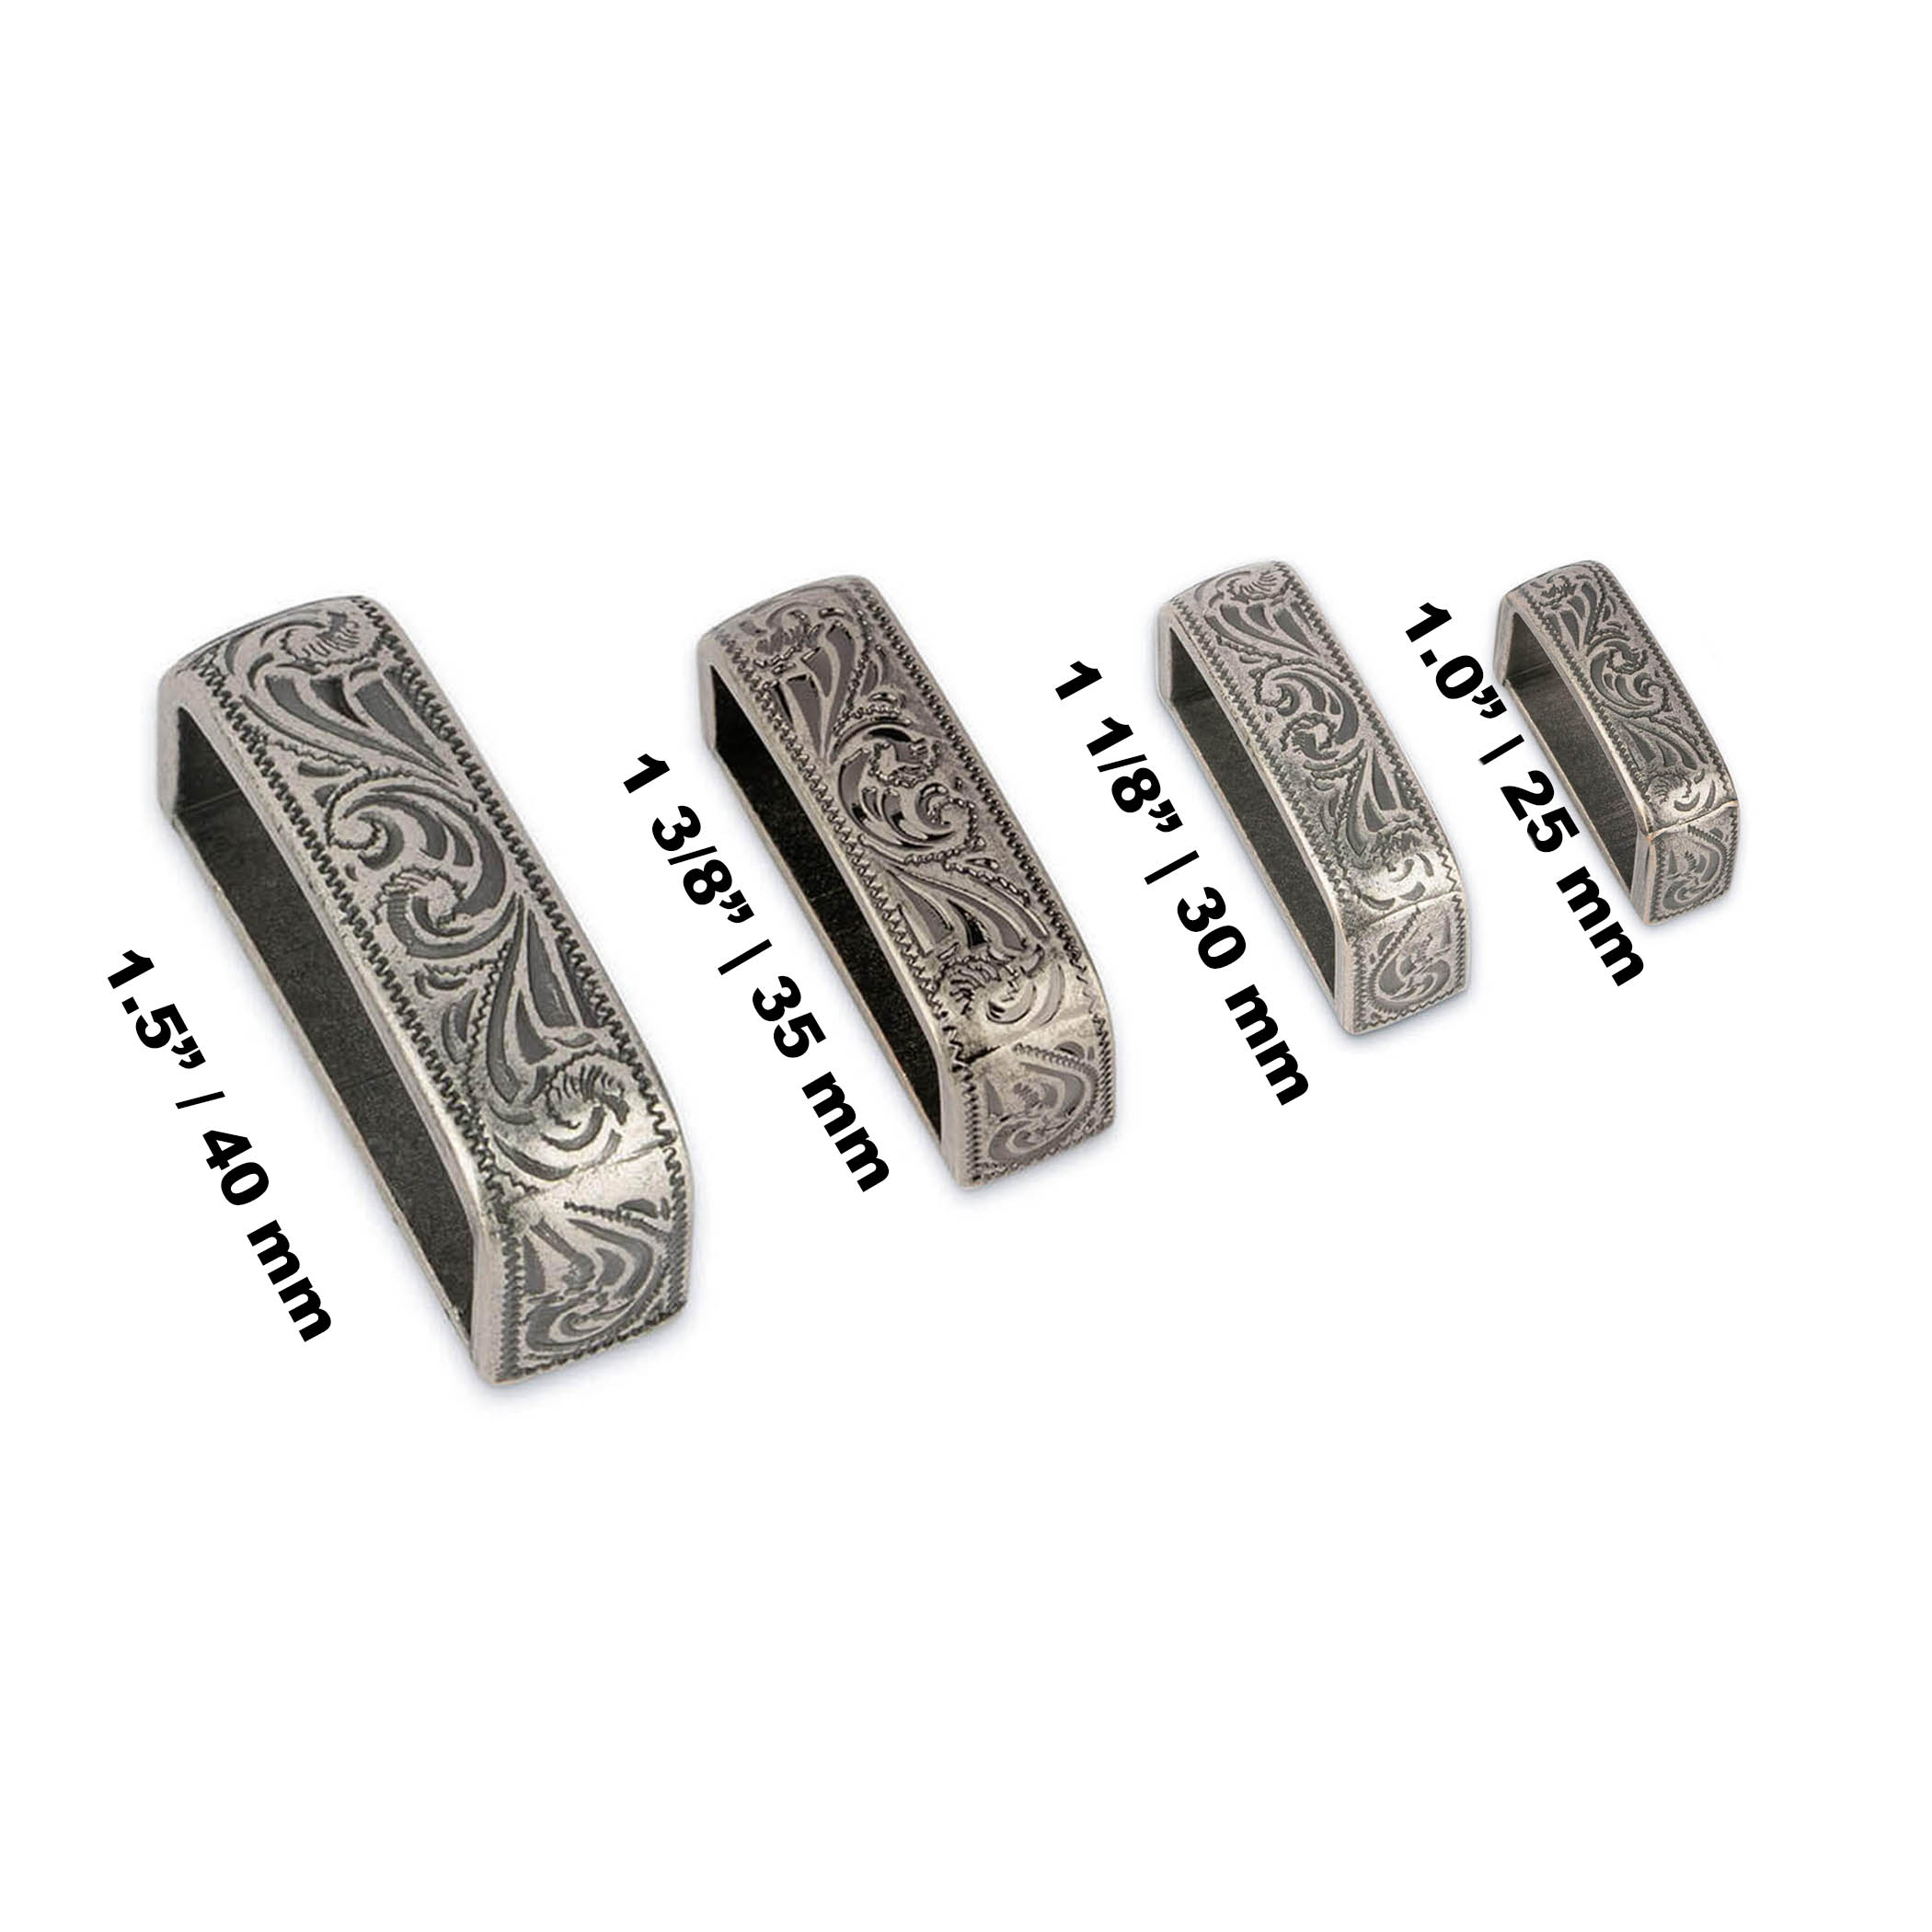 Buy Silver Metal Belt Loop 1 1/8 Inch